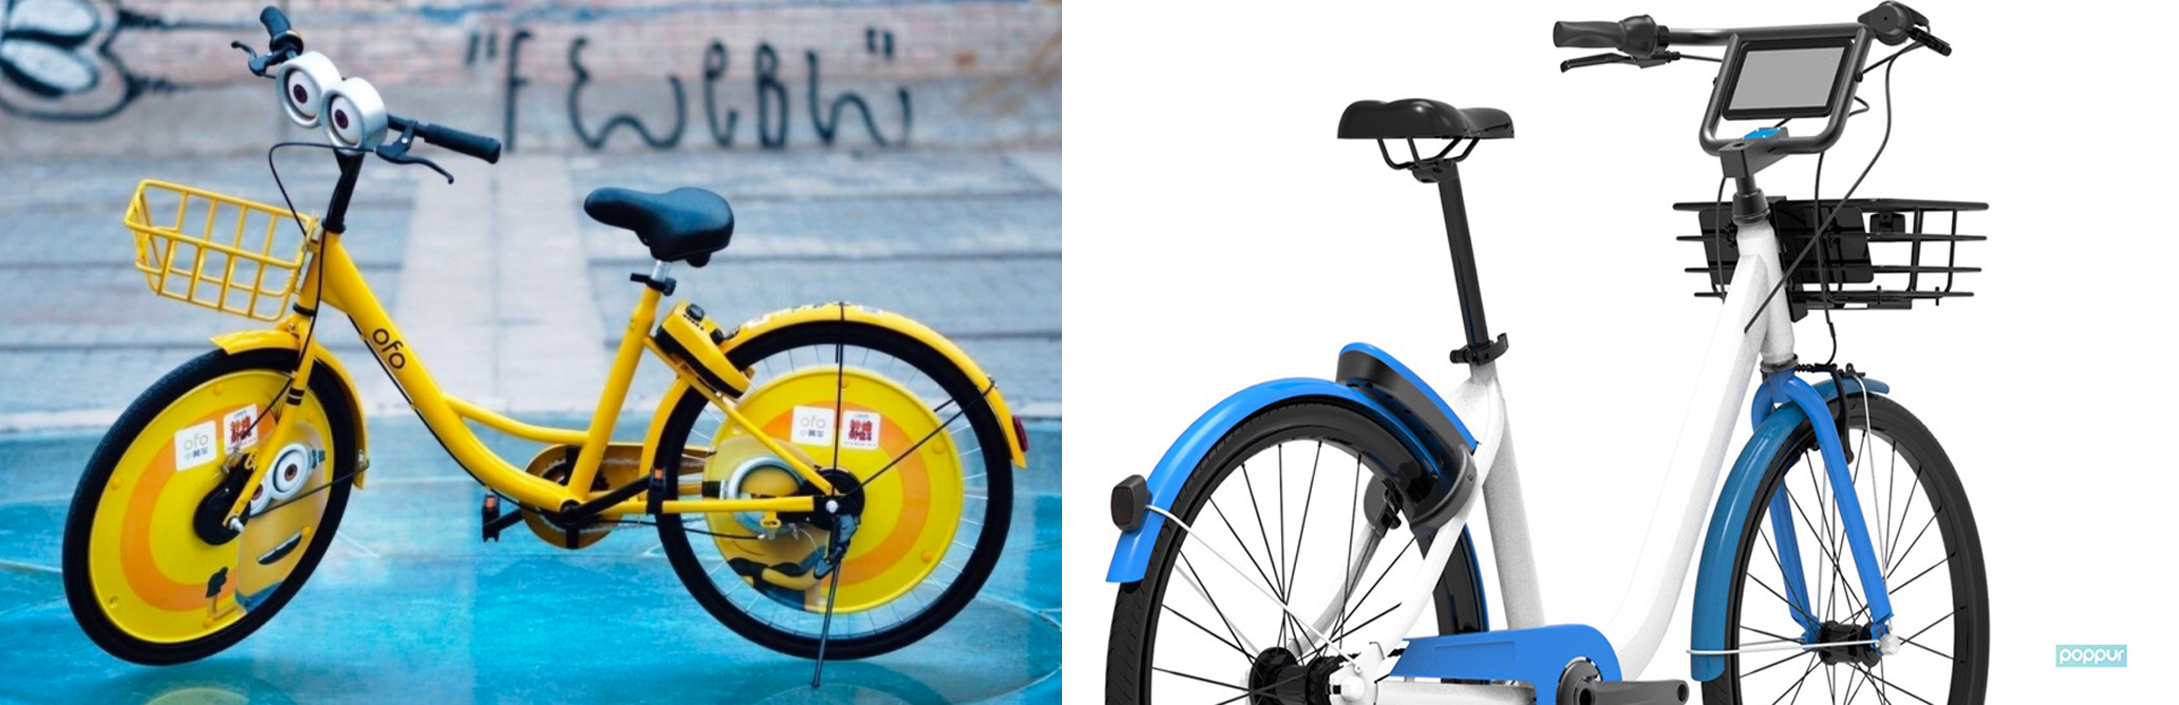 摩拜和1号店也推了定制版单车，但它们想做的不仅仅是营销 | 营销观察